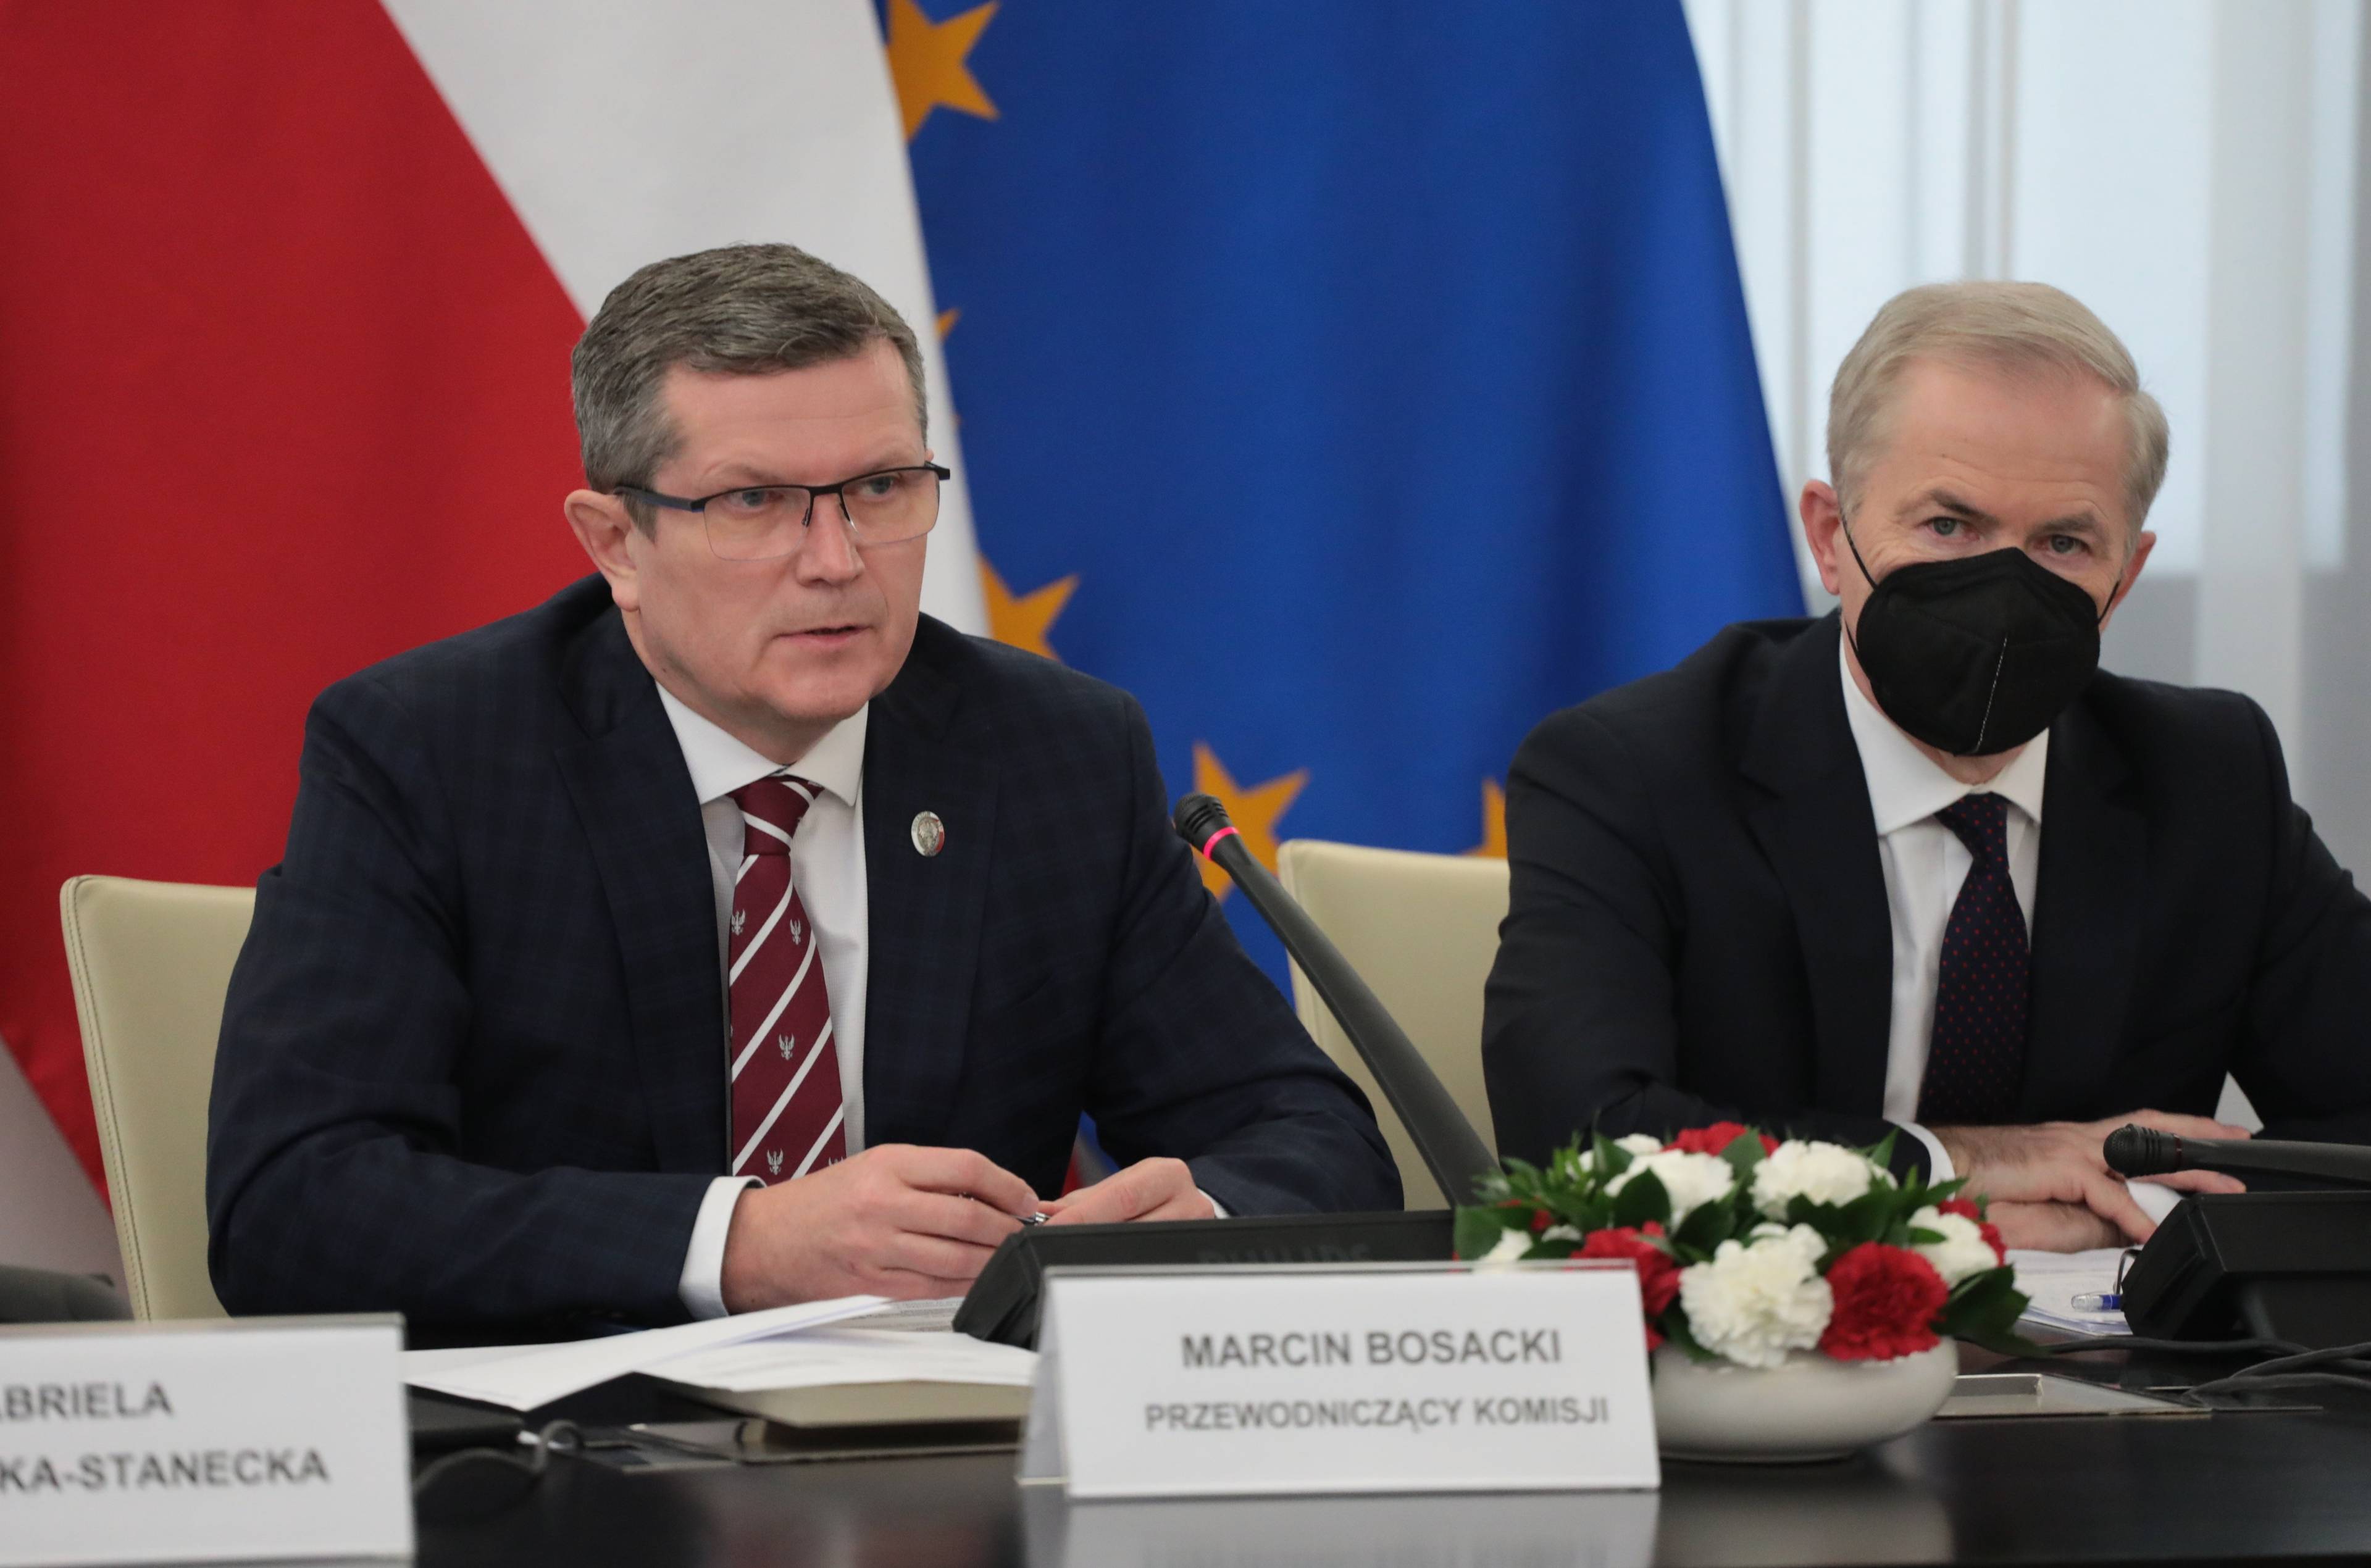 Mężczyzna siedzi, na stole przed nim tabliczka "Marcin Bosacki, przewodniczący komisji"